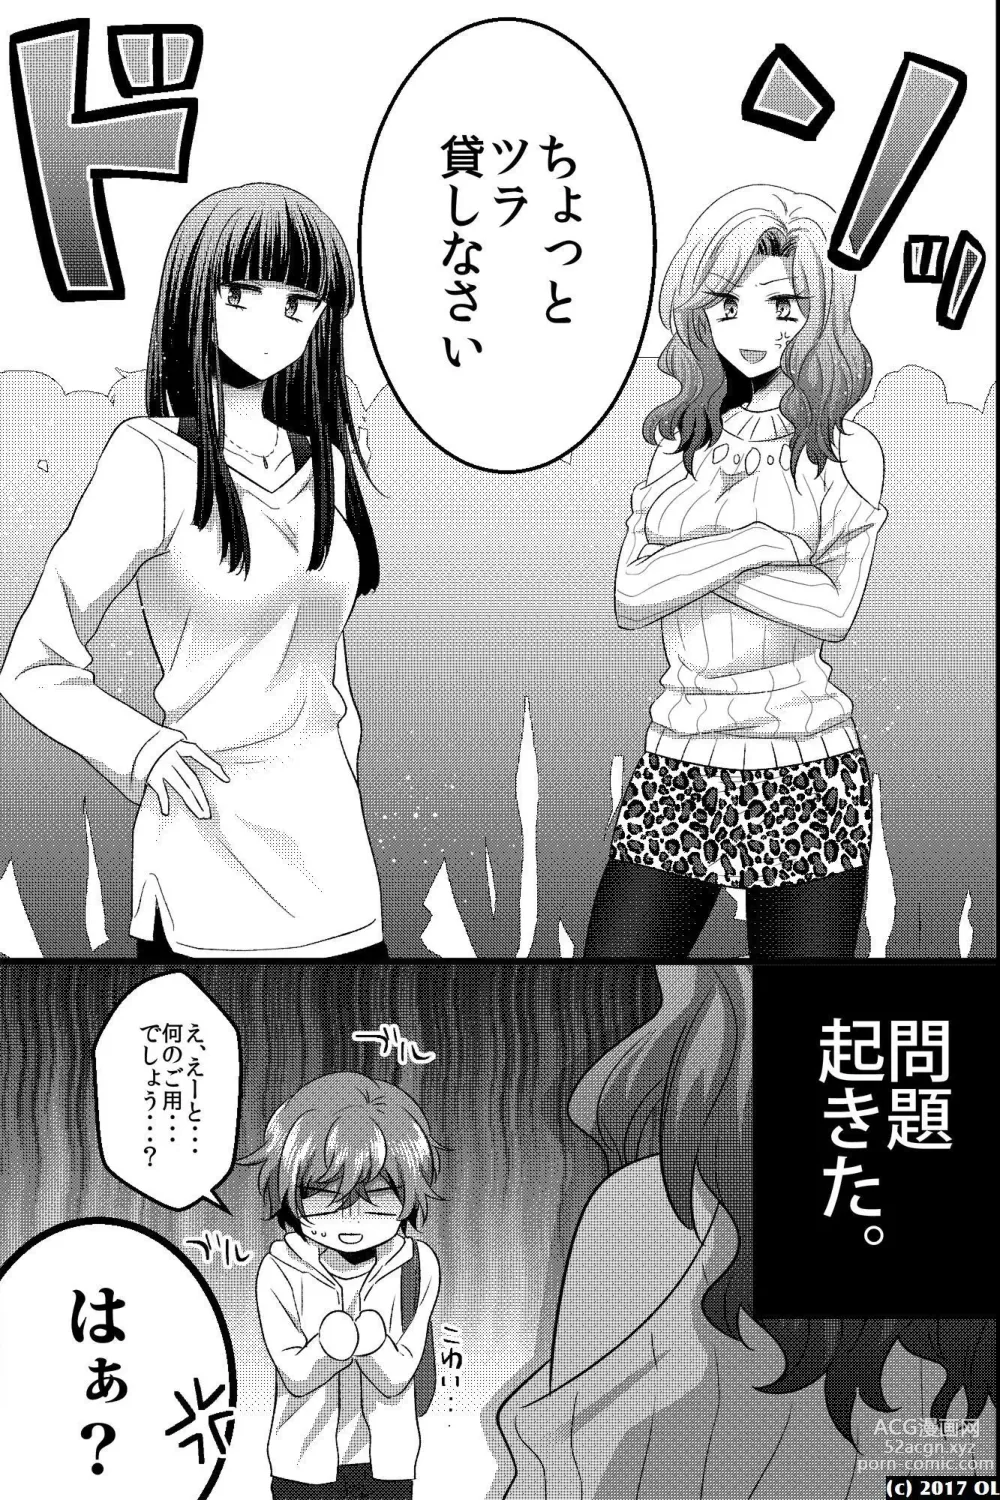 Page 8 of doujinshi Nonke dakedo Moteo Futari ni Semerarete Hatsu Ana o Sasagemashita